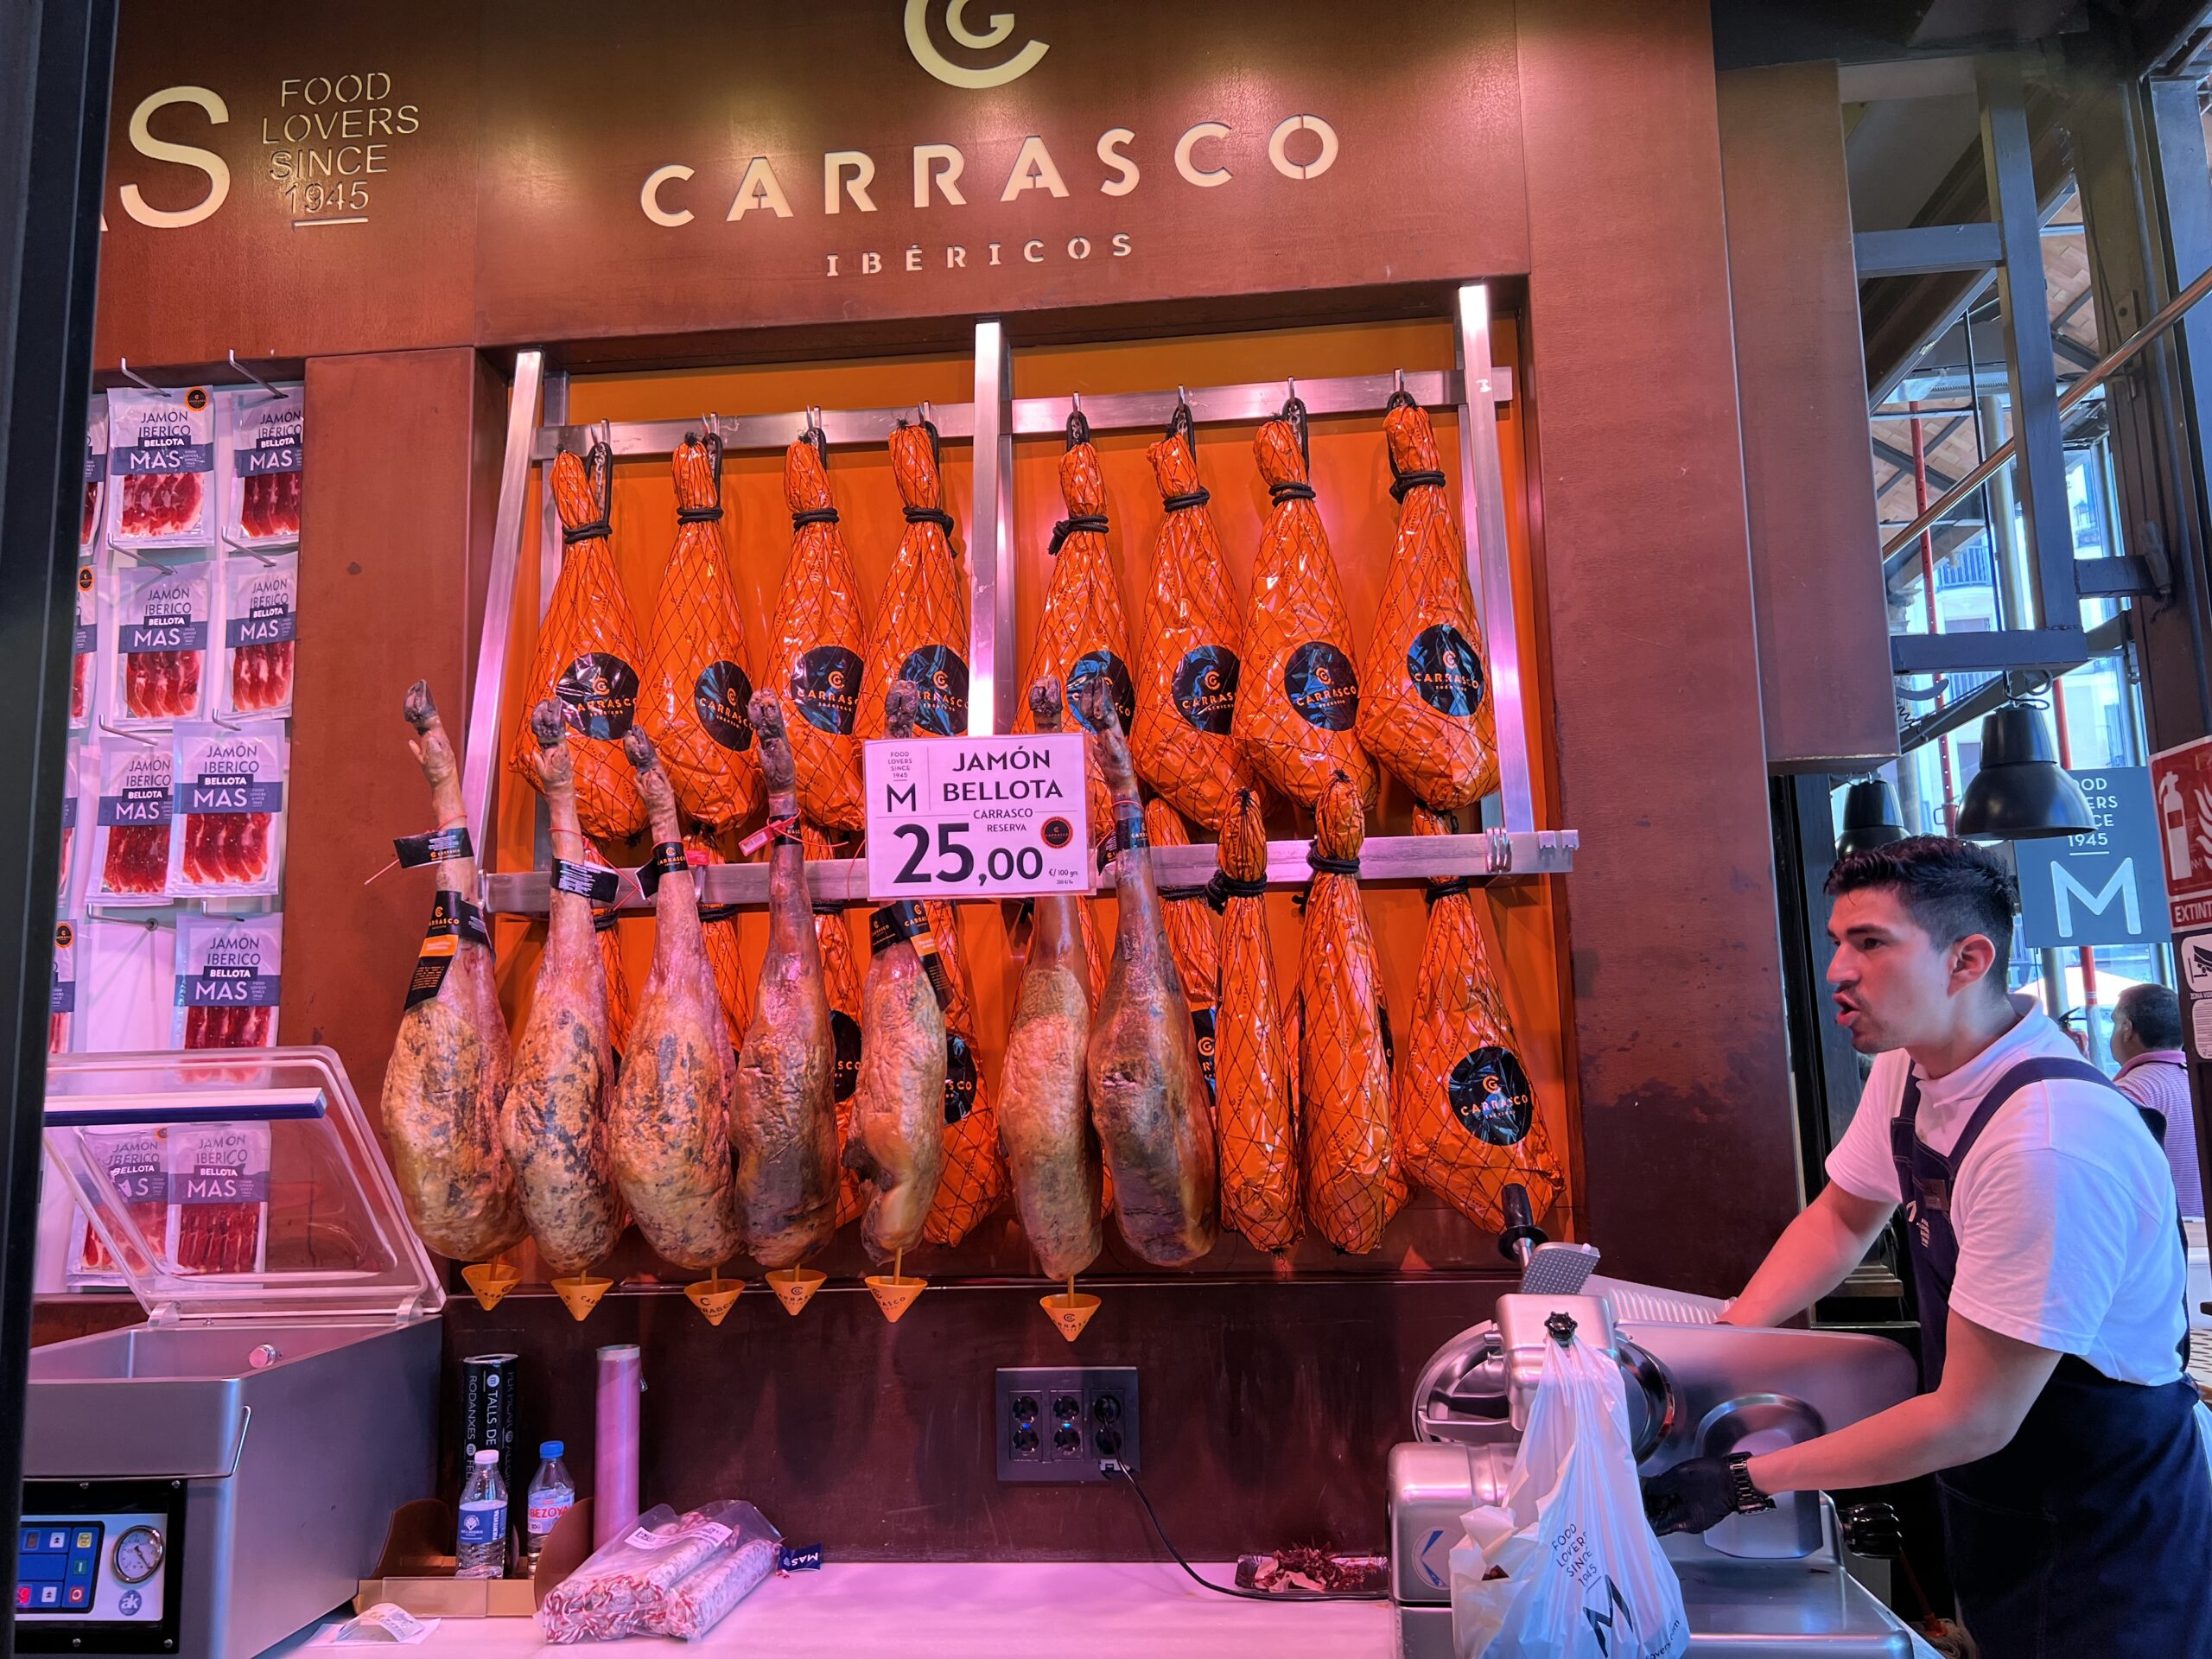 Carrasco San miguel market